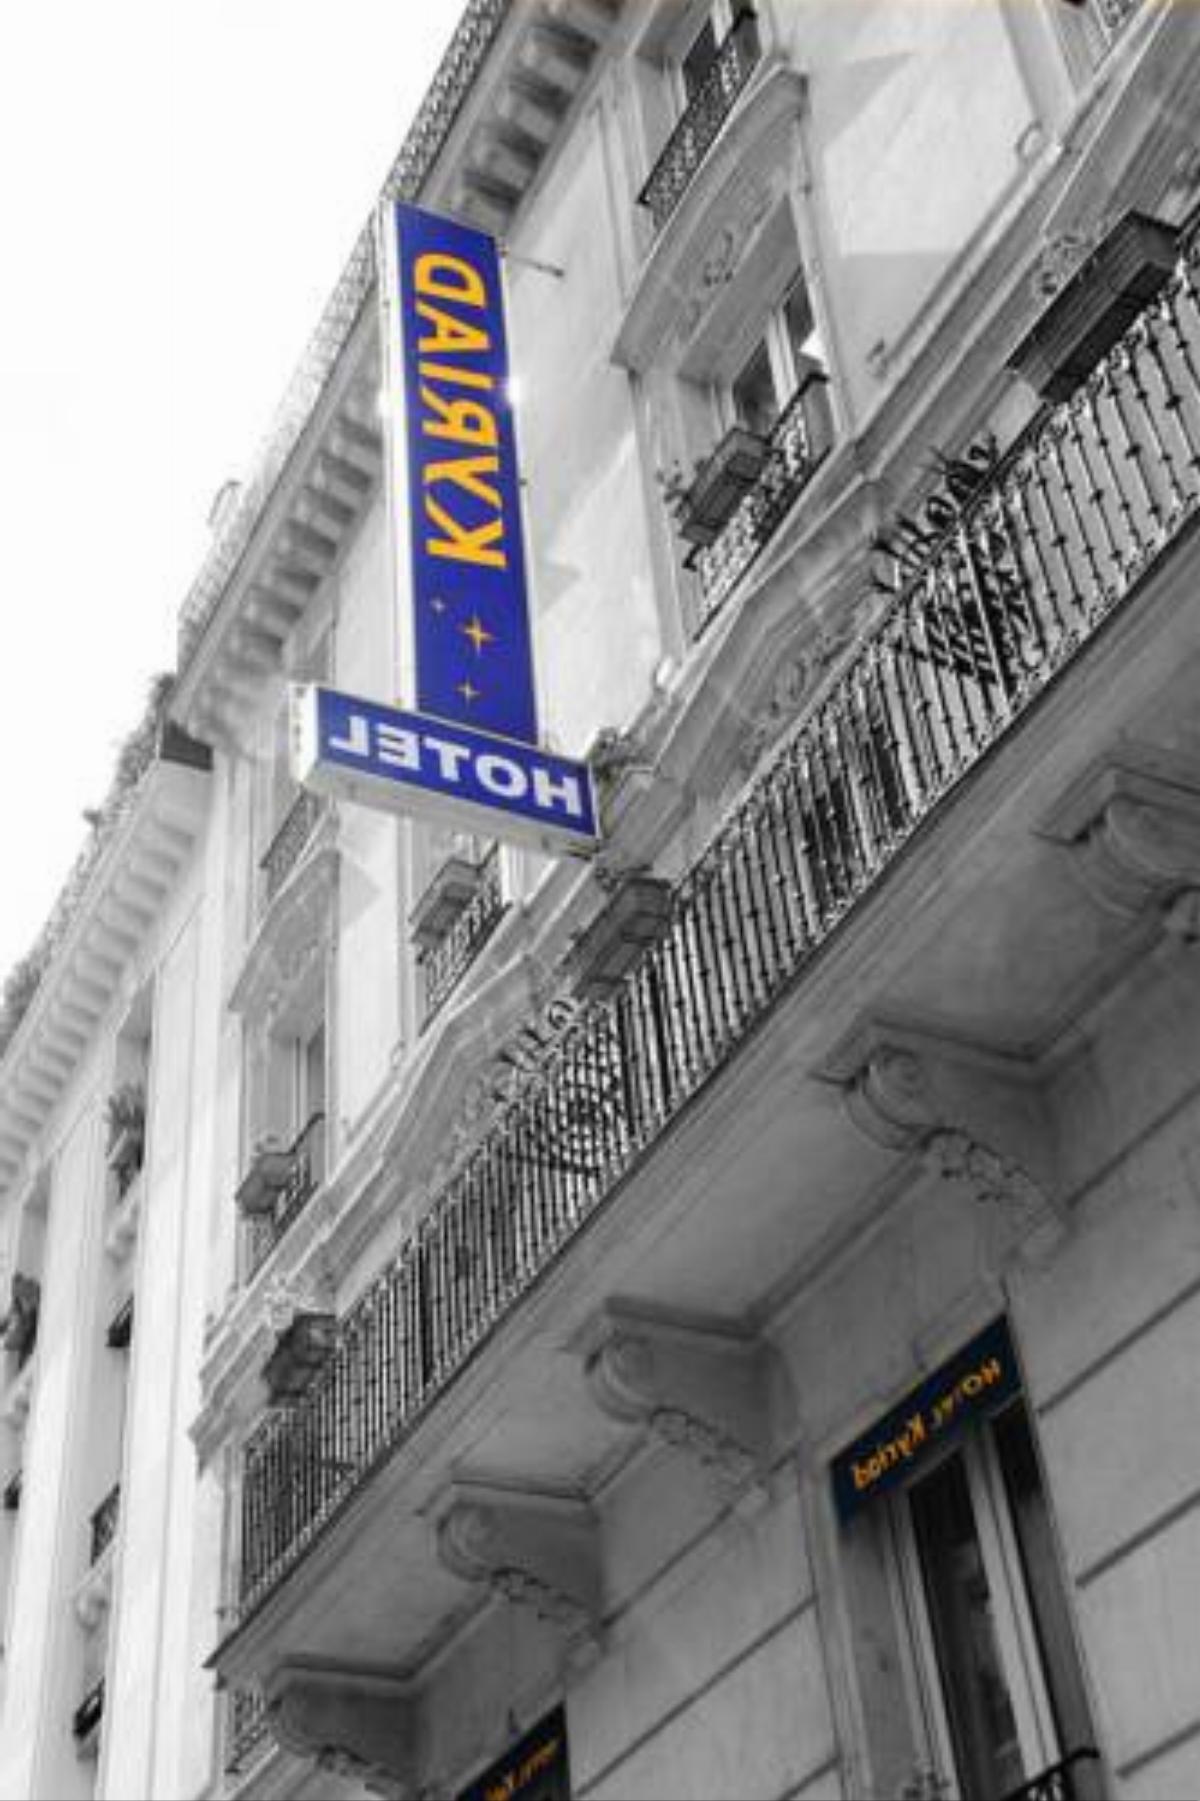 Kyriad Hotel XIII Italie Gobelins Hotel Paris France